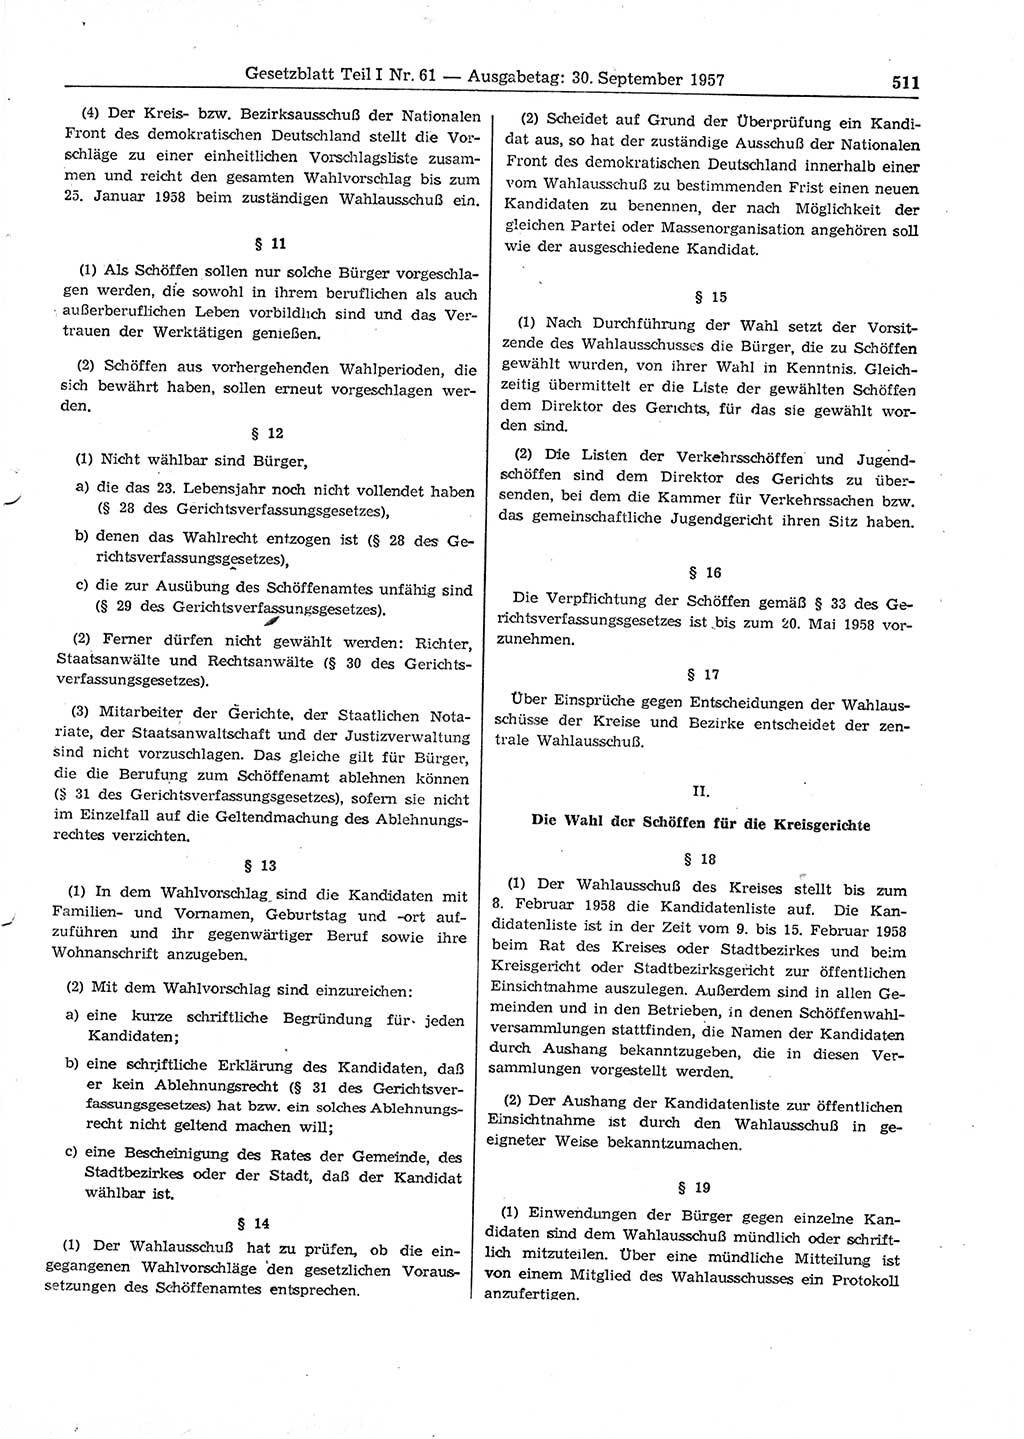 Gesetzblatt (GBl.) der Deutschen Demokratischen Republik (DDR) Teil Ⅰ 1957, Seite 511 (GBl. DDR Ⅰ 1957, S. 511)